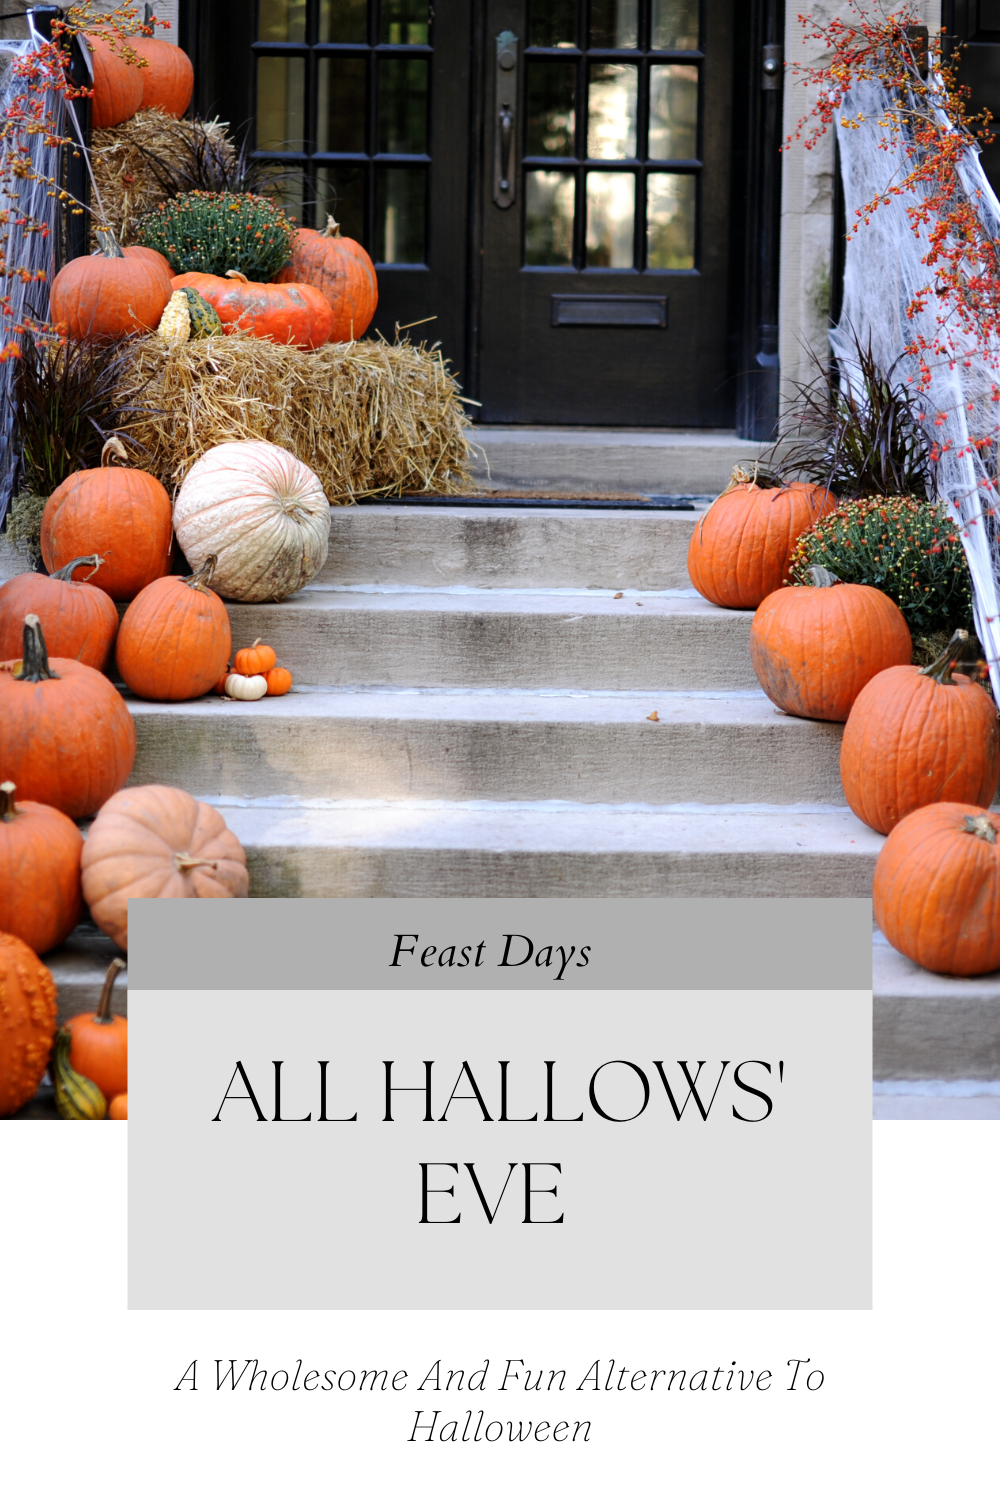 All Hallows' Eve